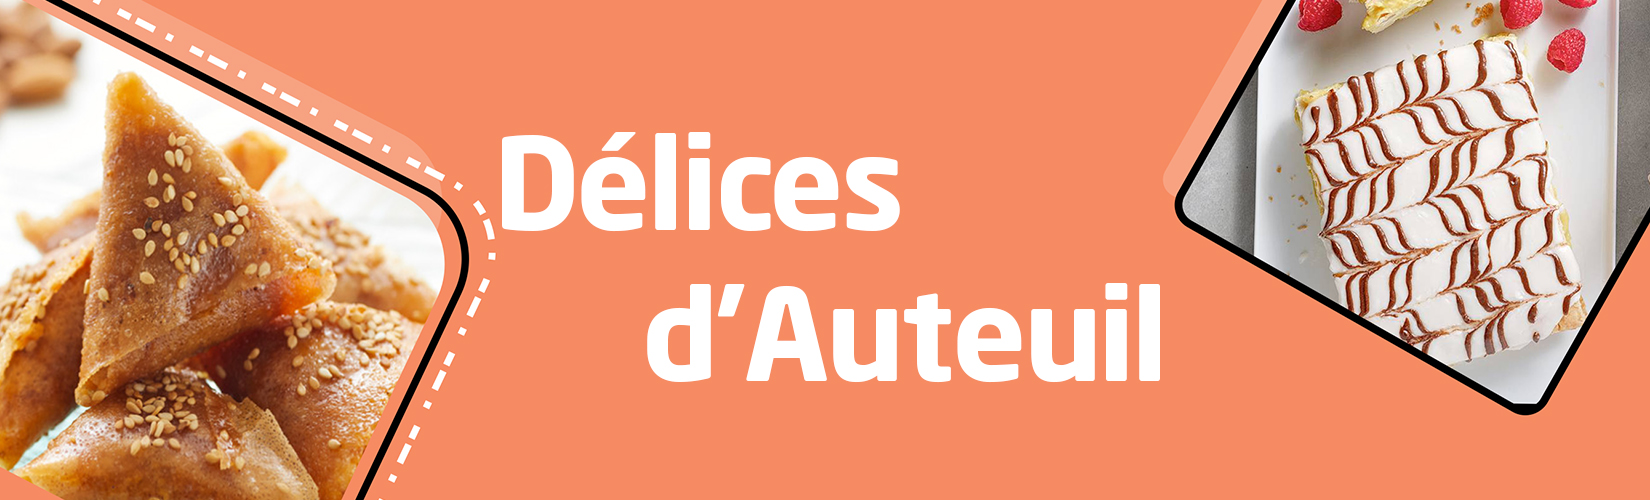 Delices Auteuil